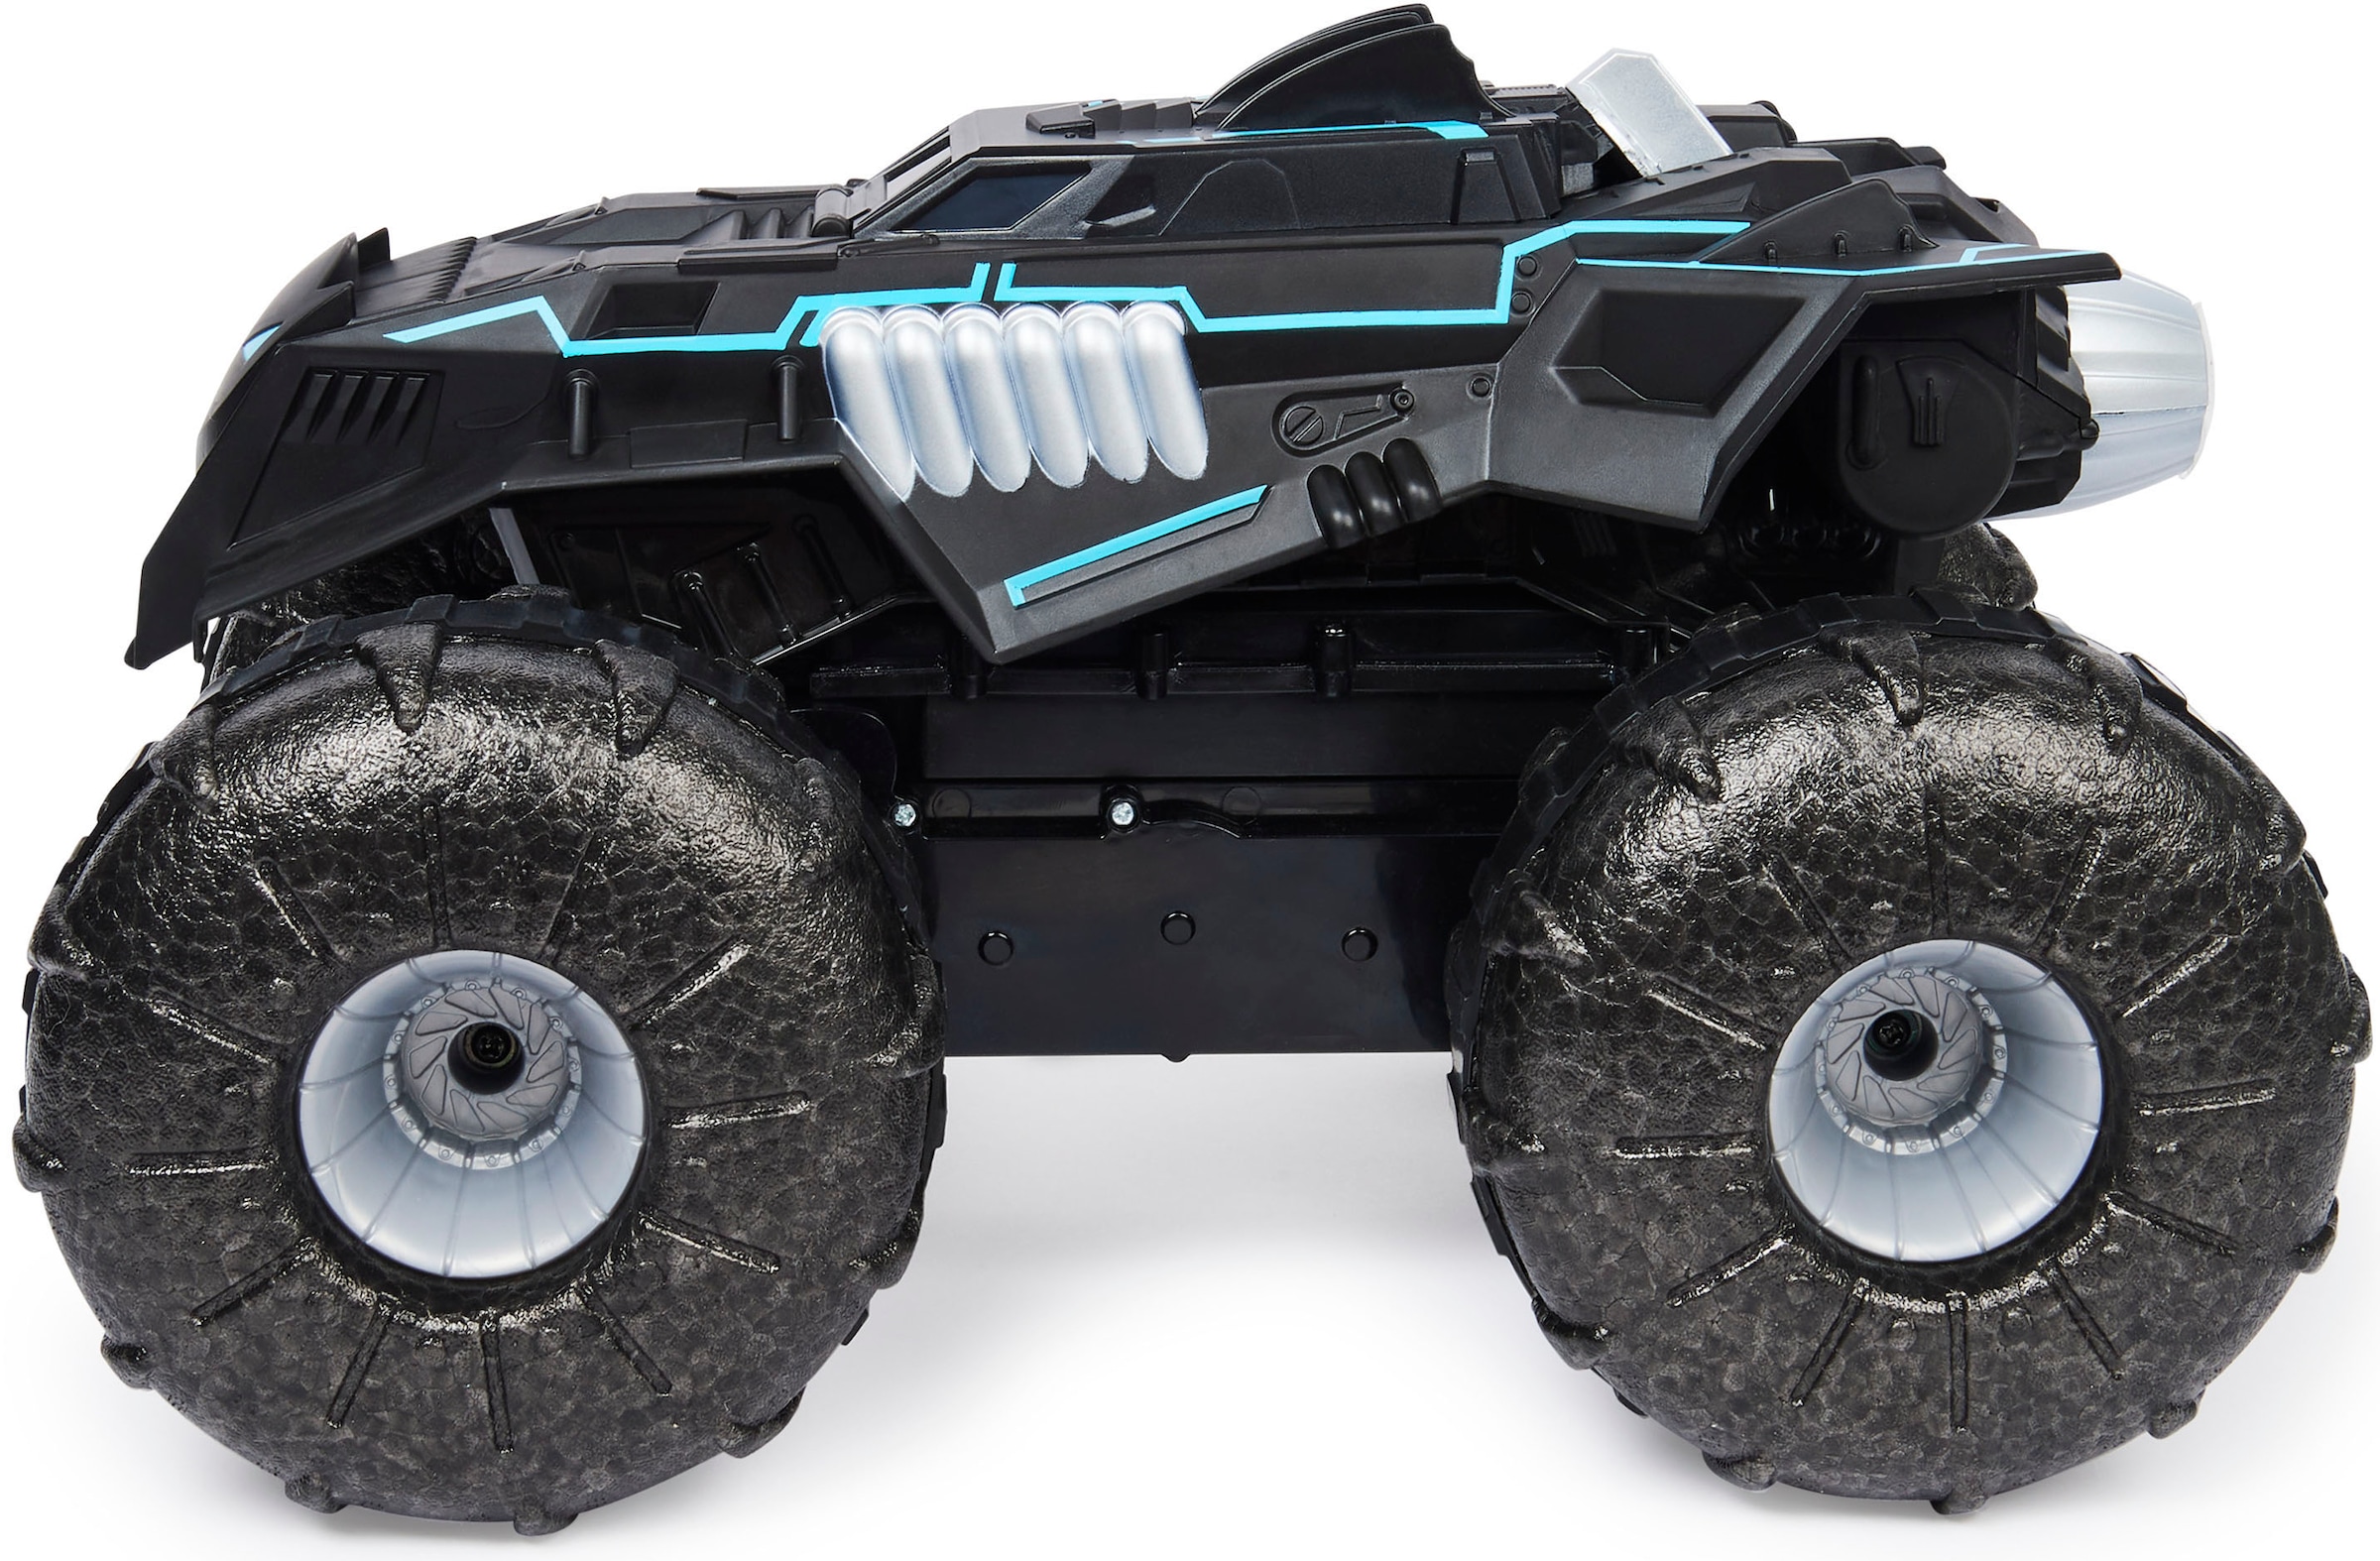 Spin Master RC-Auto »Batman - RC All Terrain Batmobile (kompatibel mit 10 cm Figuren)«, für Land und Wasser